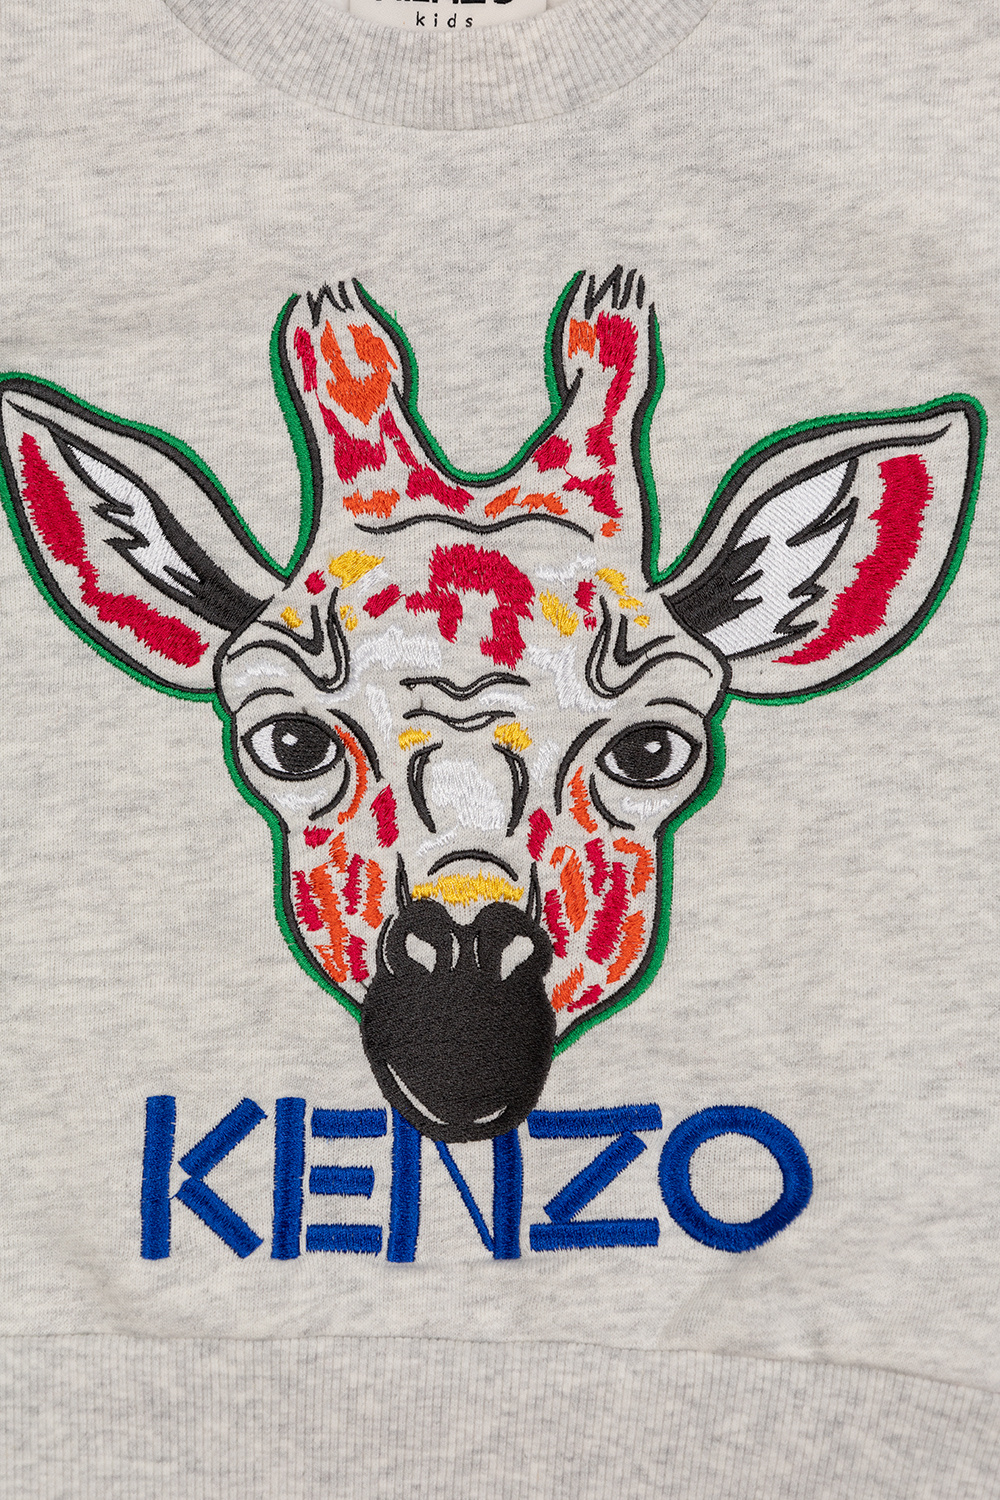 Kenzo Kids Logo with logo